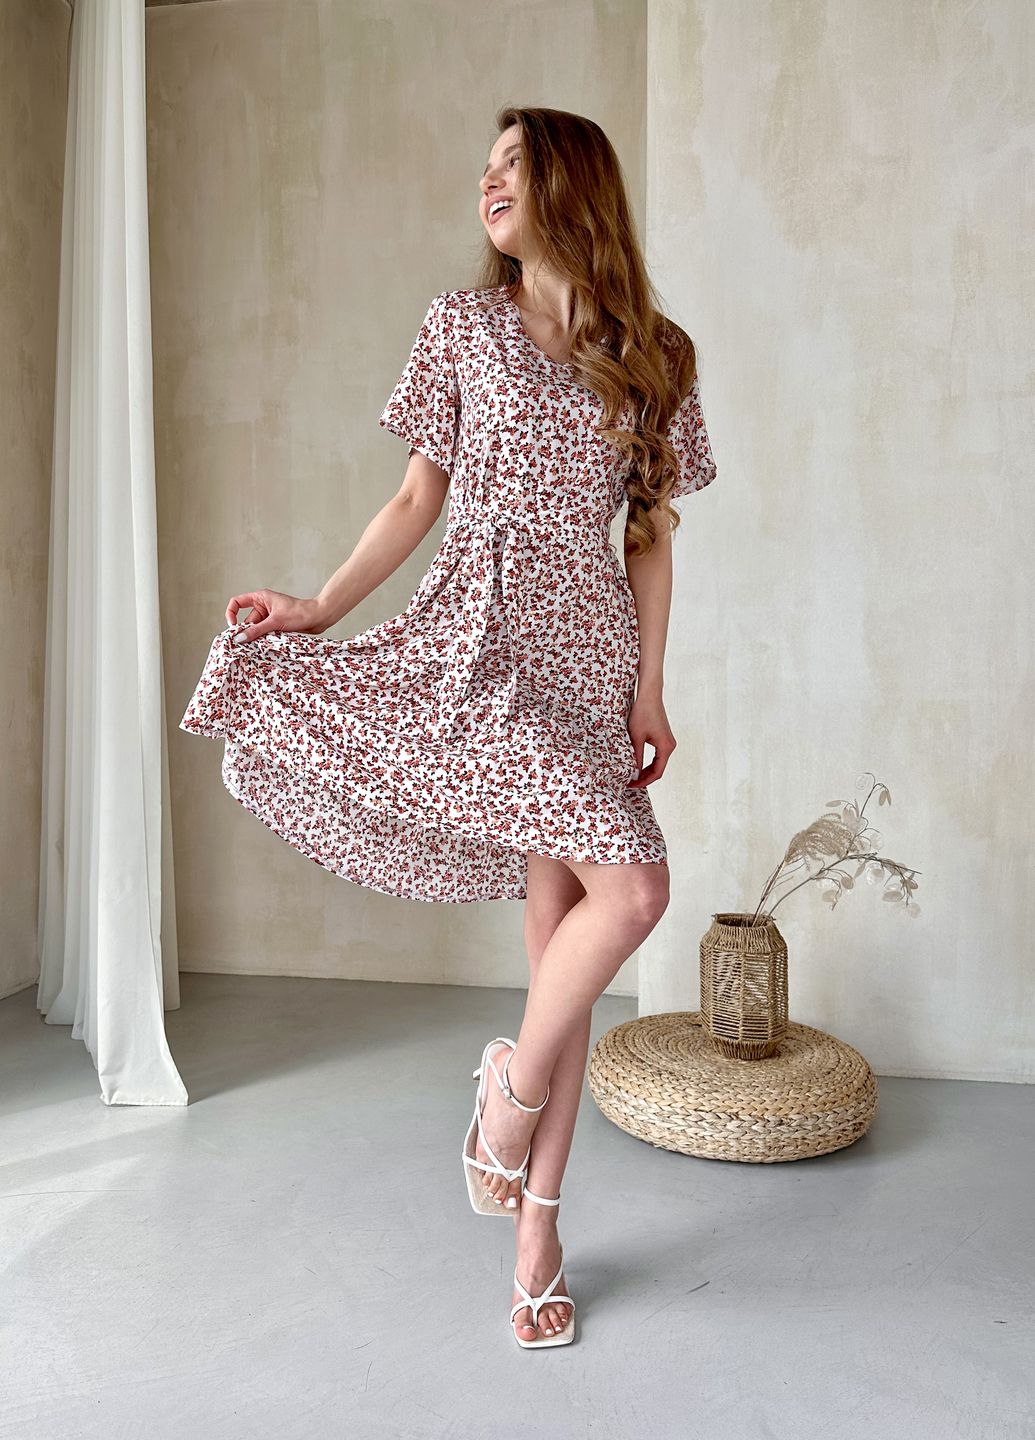 Купить Женское платье до колена с цветочным принтом и пояском белое Merlini Маренго 700000242, размер 42-44 (S-M) в интернет-магазине